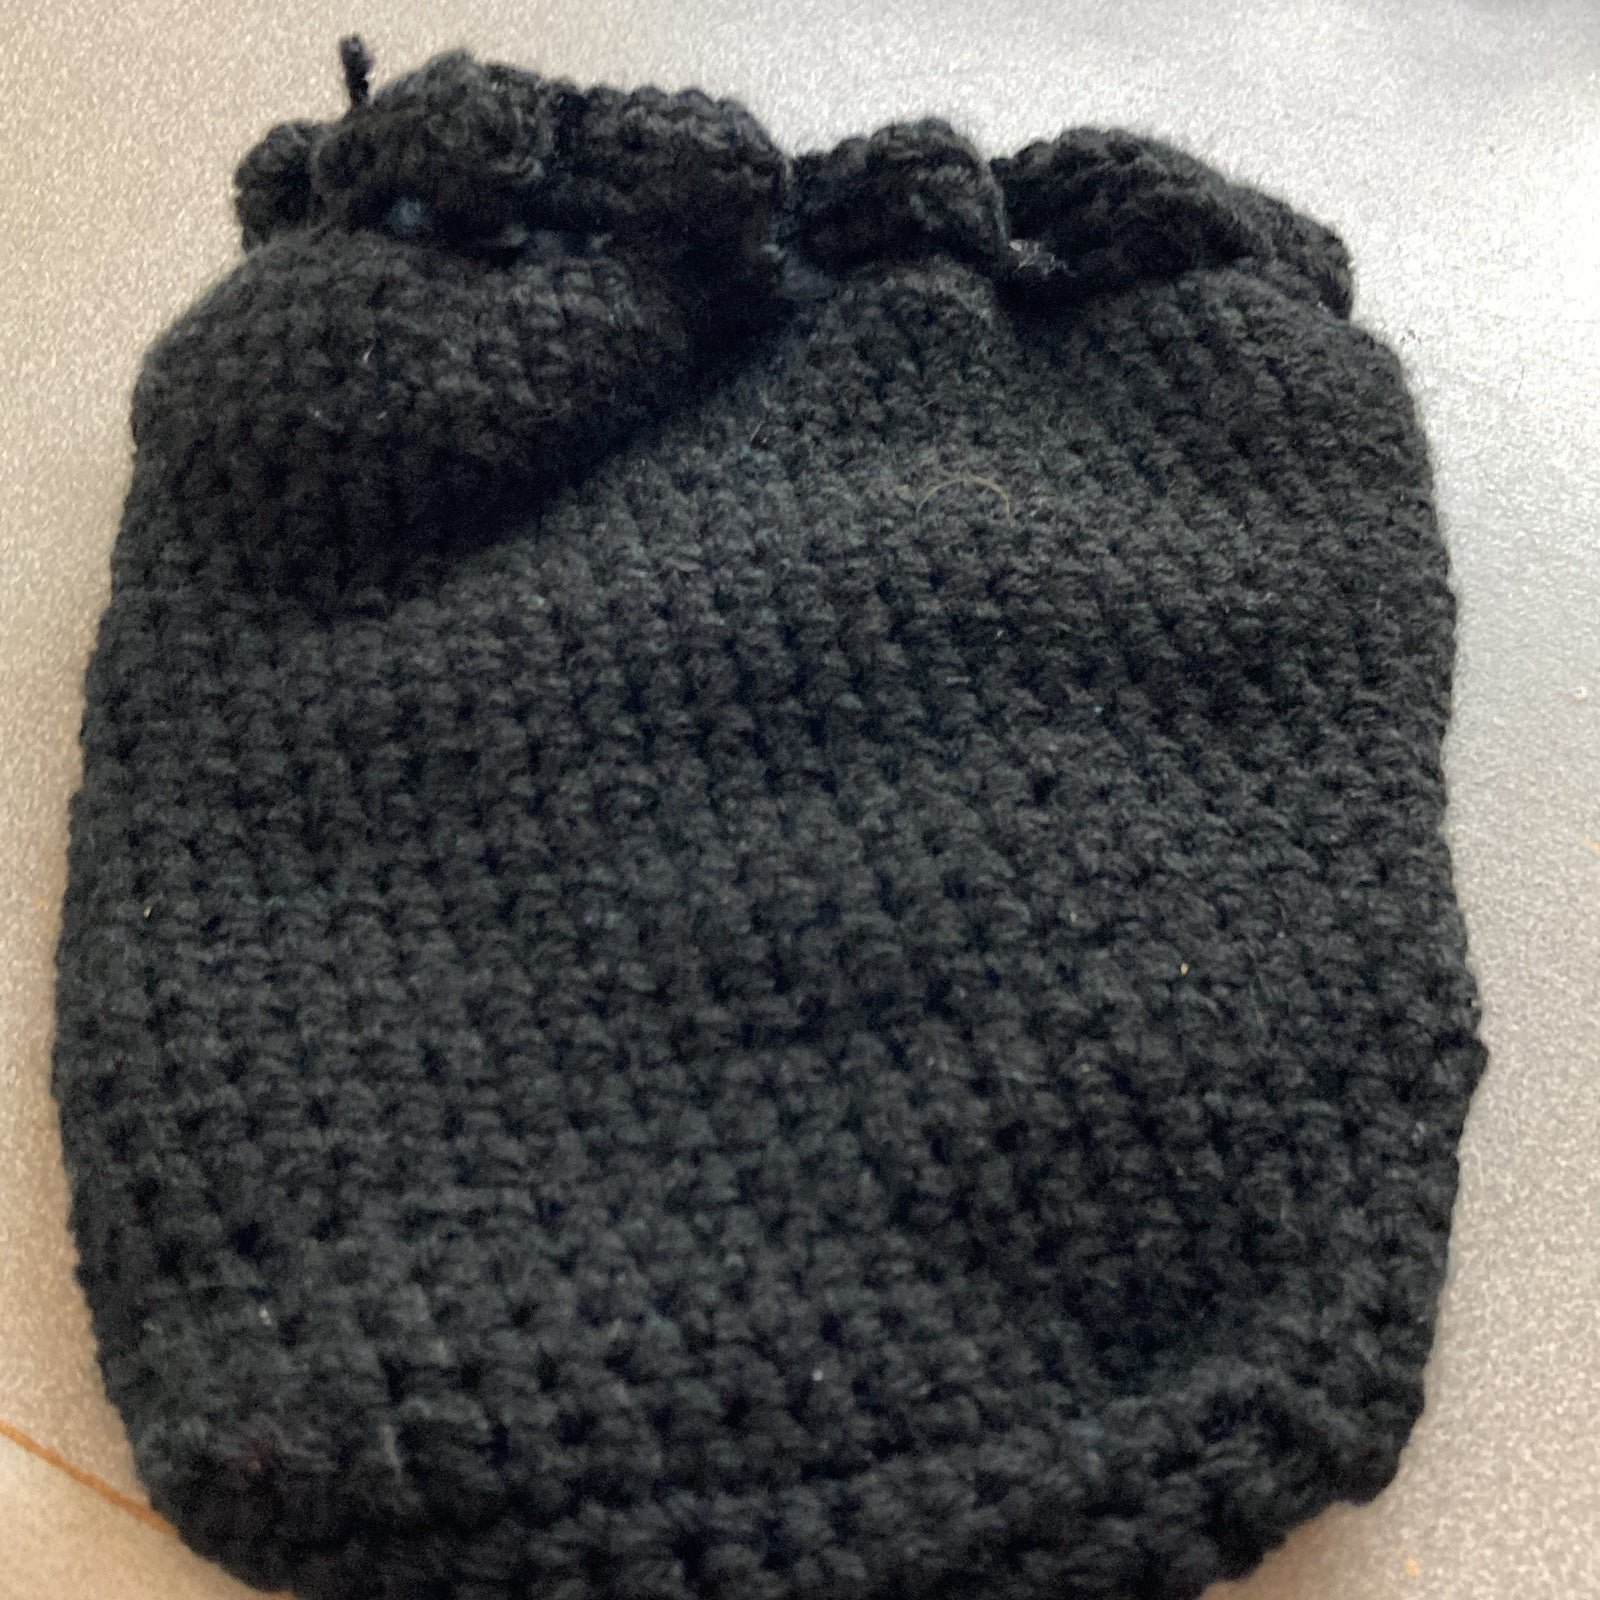 Crochet Hand Made bag with evil eye on it fXMN1sfzc